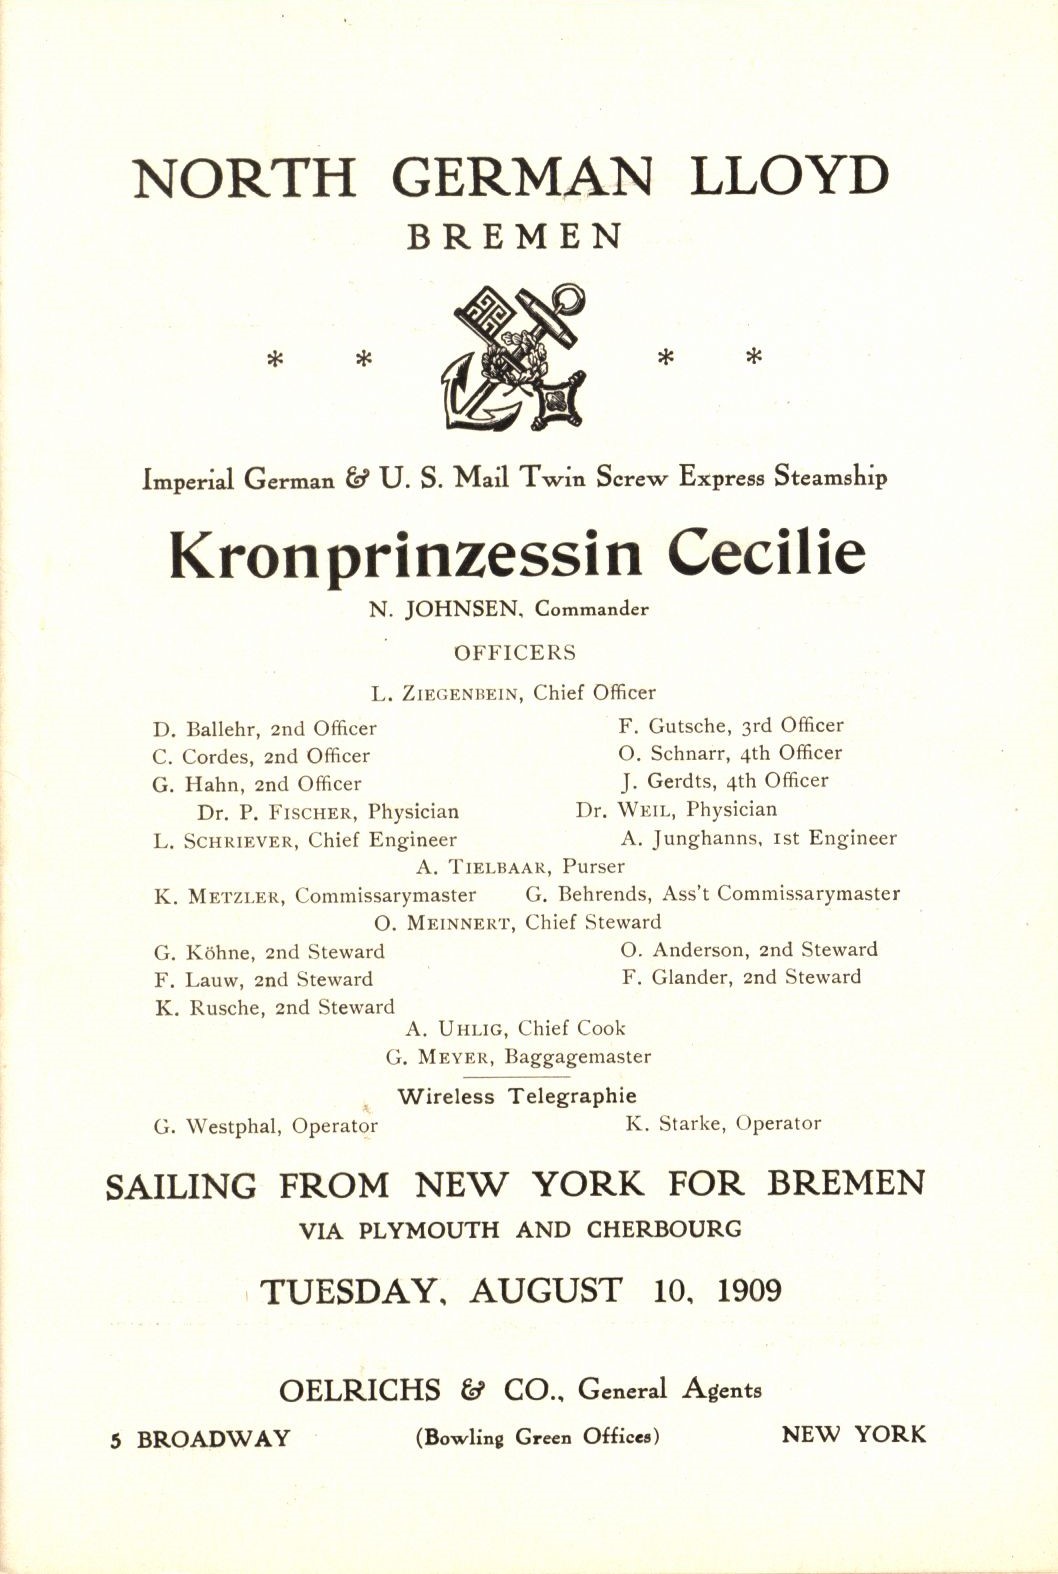 Kronprinzessin Cecilie Passenger List, August 10, 1909 (ms1_7_9_3)